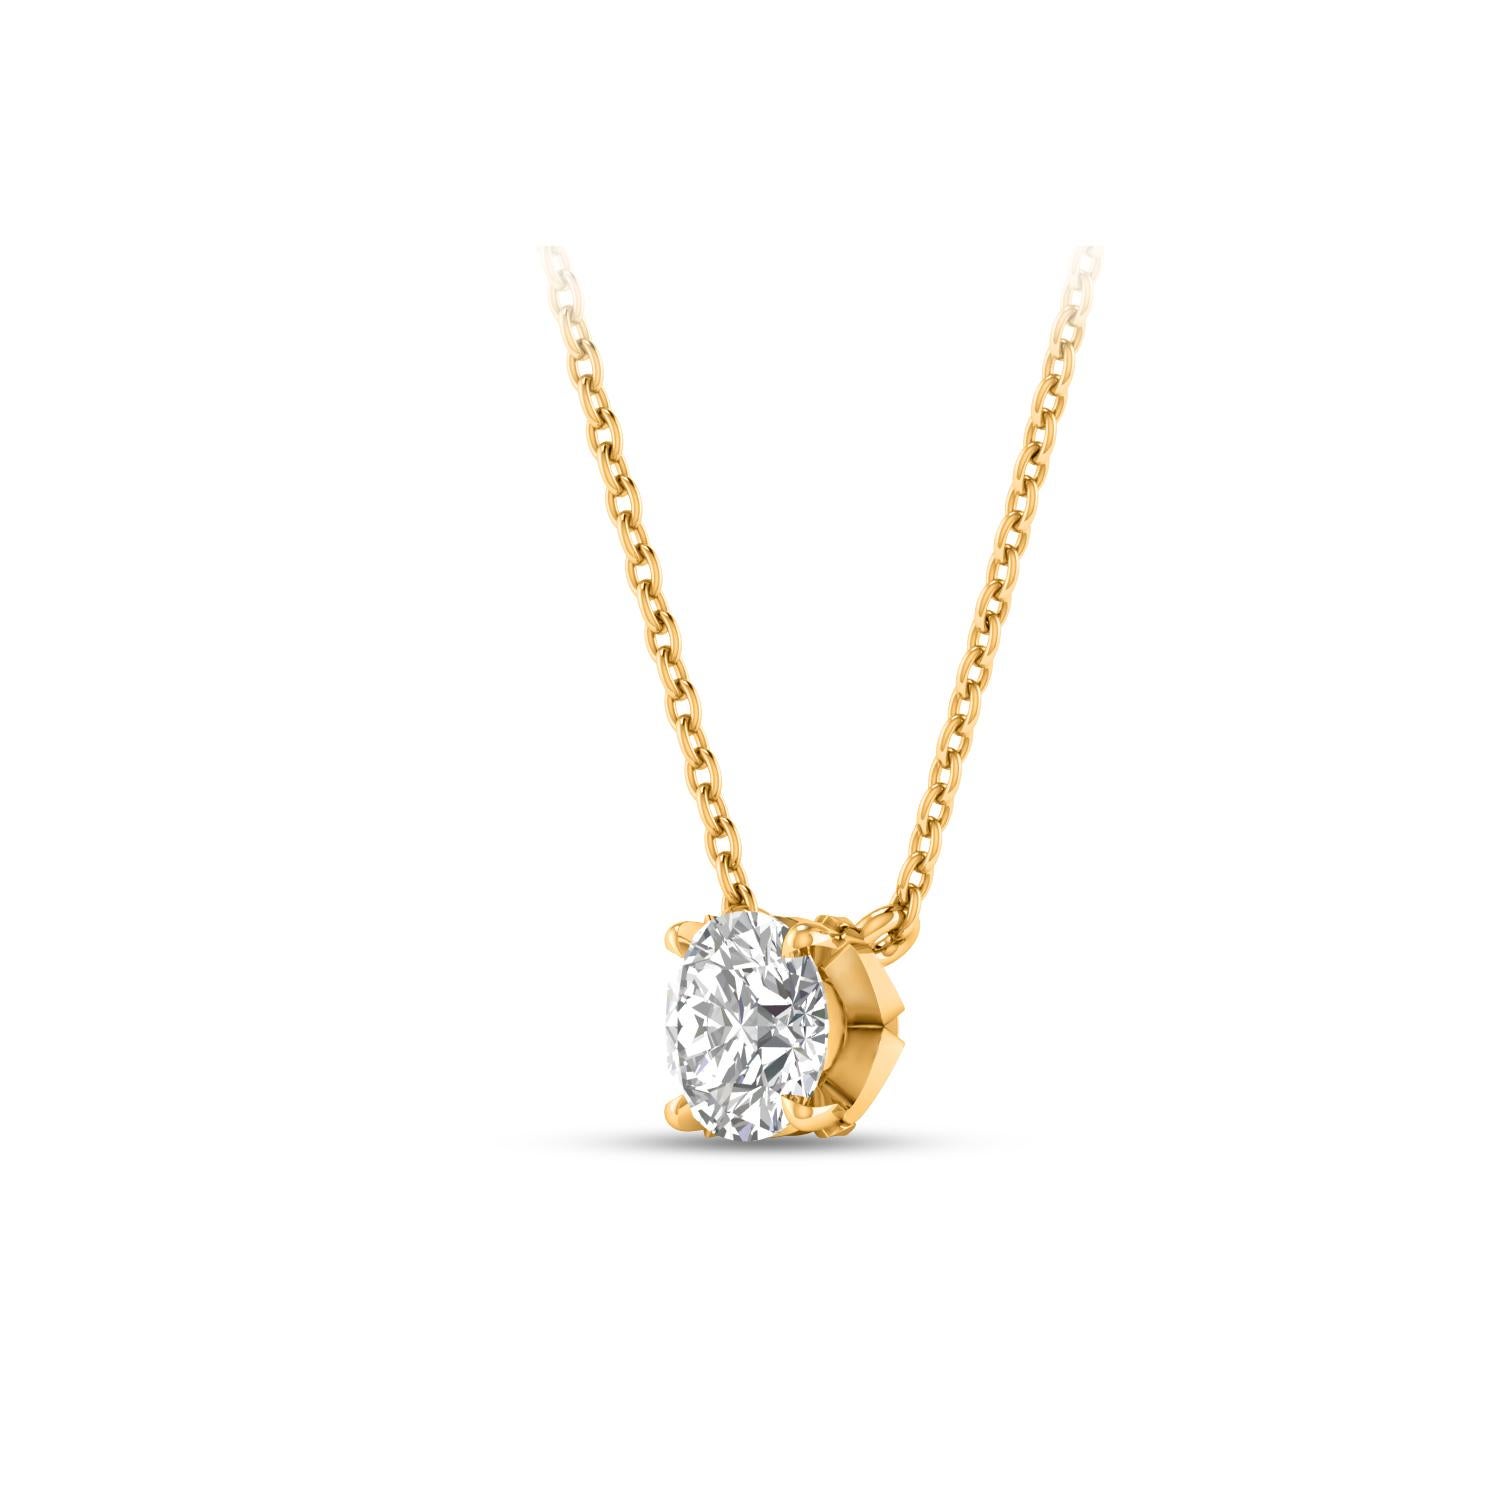  Ce collier à diamant solitaire est composé d'un diamant unique de 0,28 carat, taillé en brillant, serti en griffe et fabriqué en or jaune 18 KT. Cet élégant collier comprend une chaîne câblée de 20 pouces avec une extension de 18 pouces. 

(Les